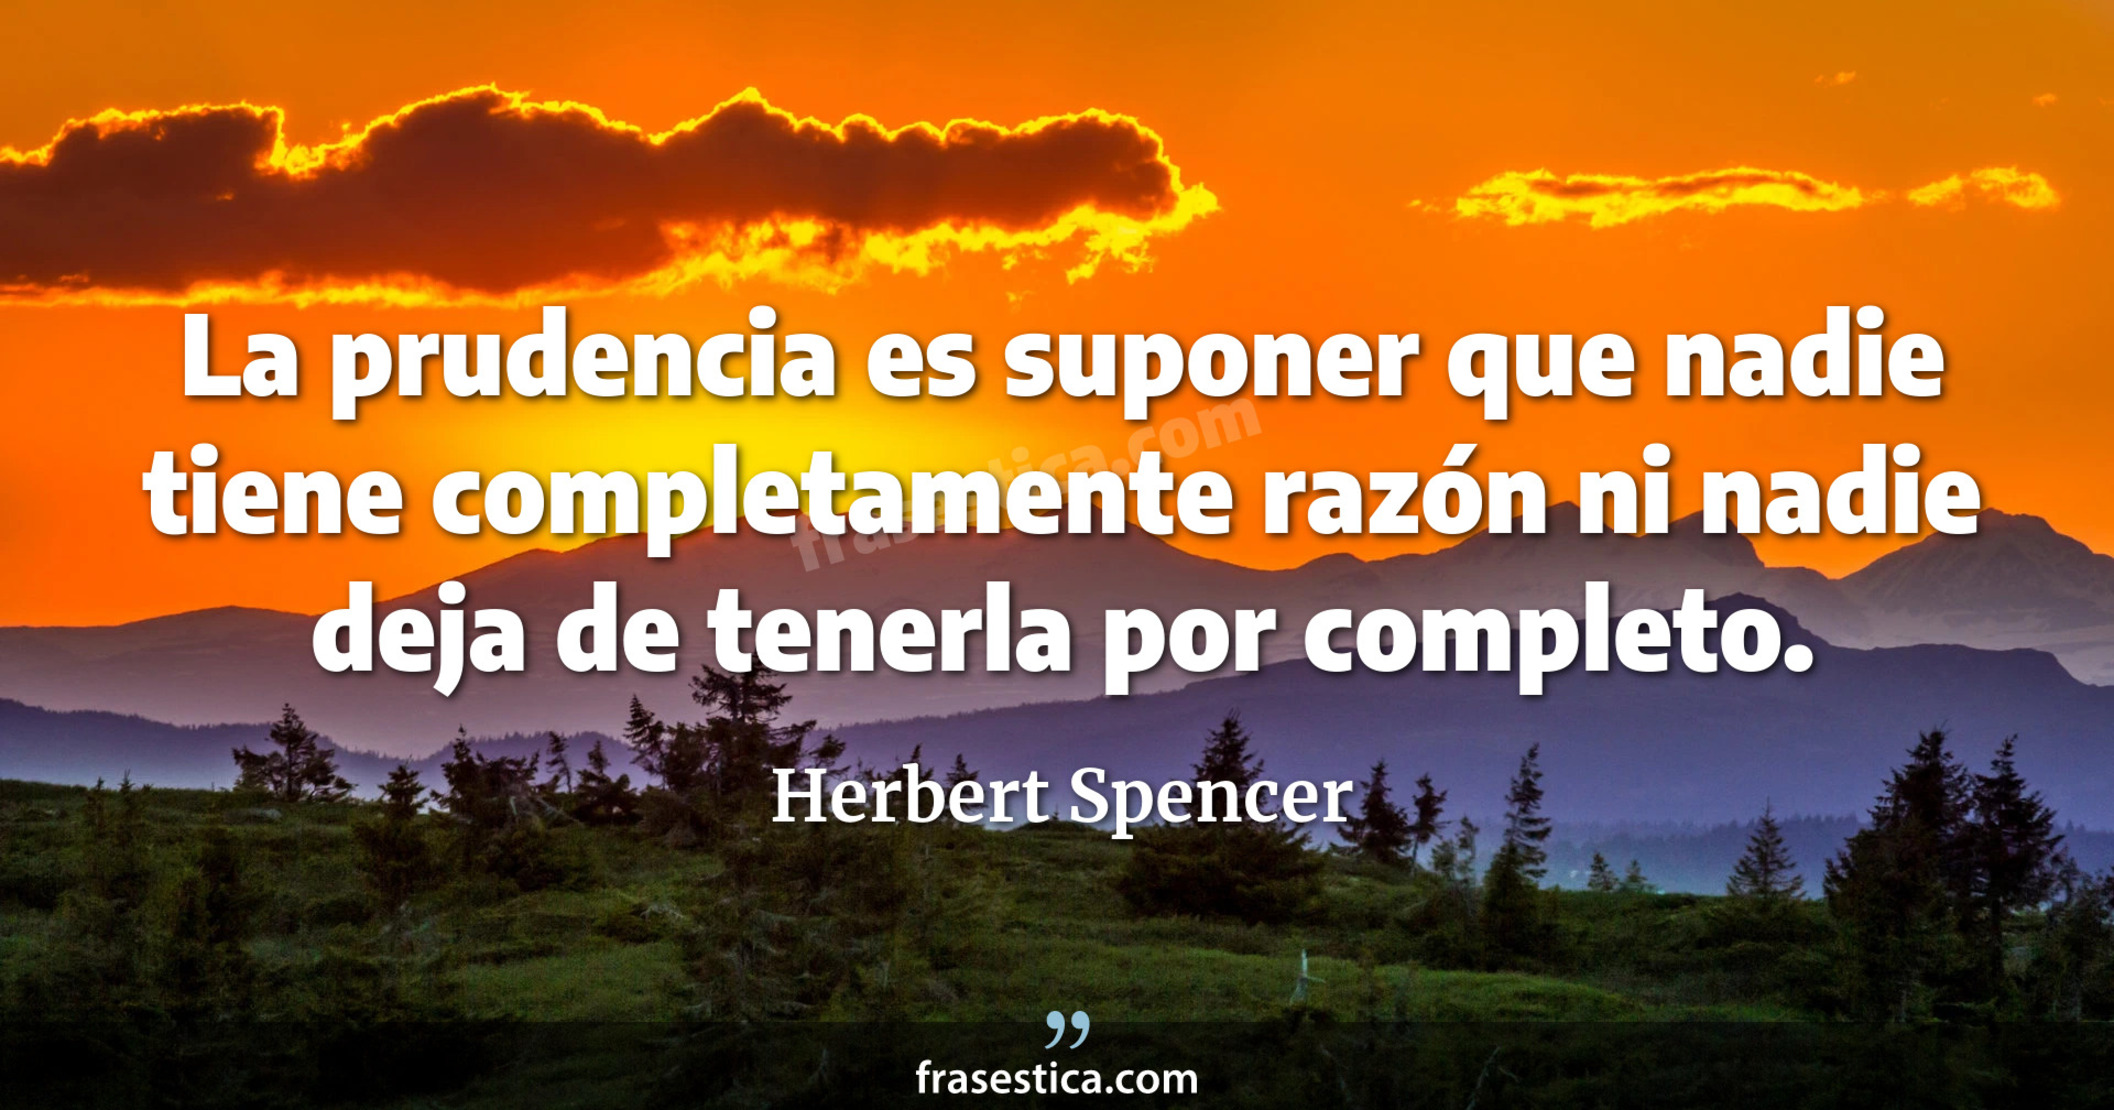 La prudencia es suponer que nadie tiene completamente razón ni nadie deja de tenerla por completo. - Herbert Spencer